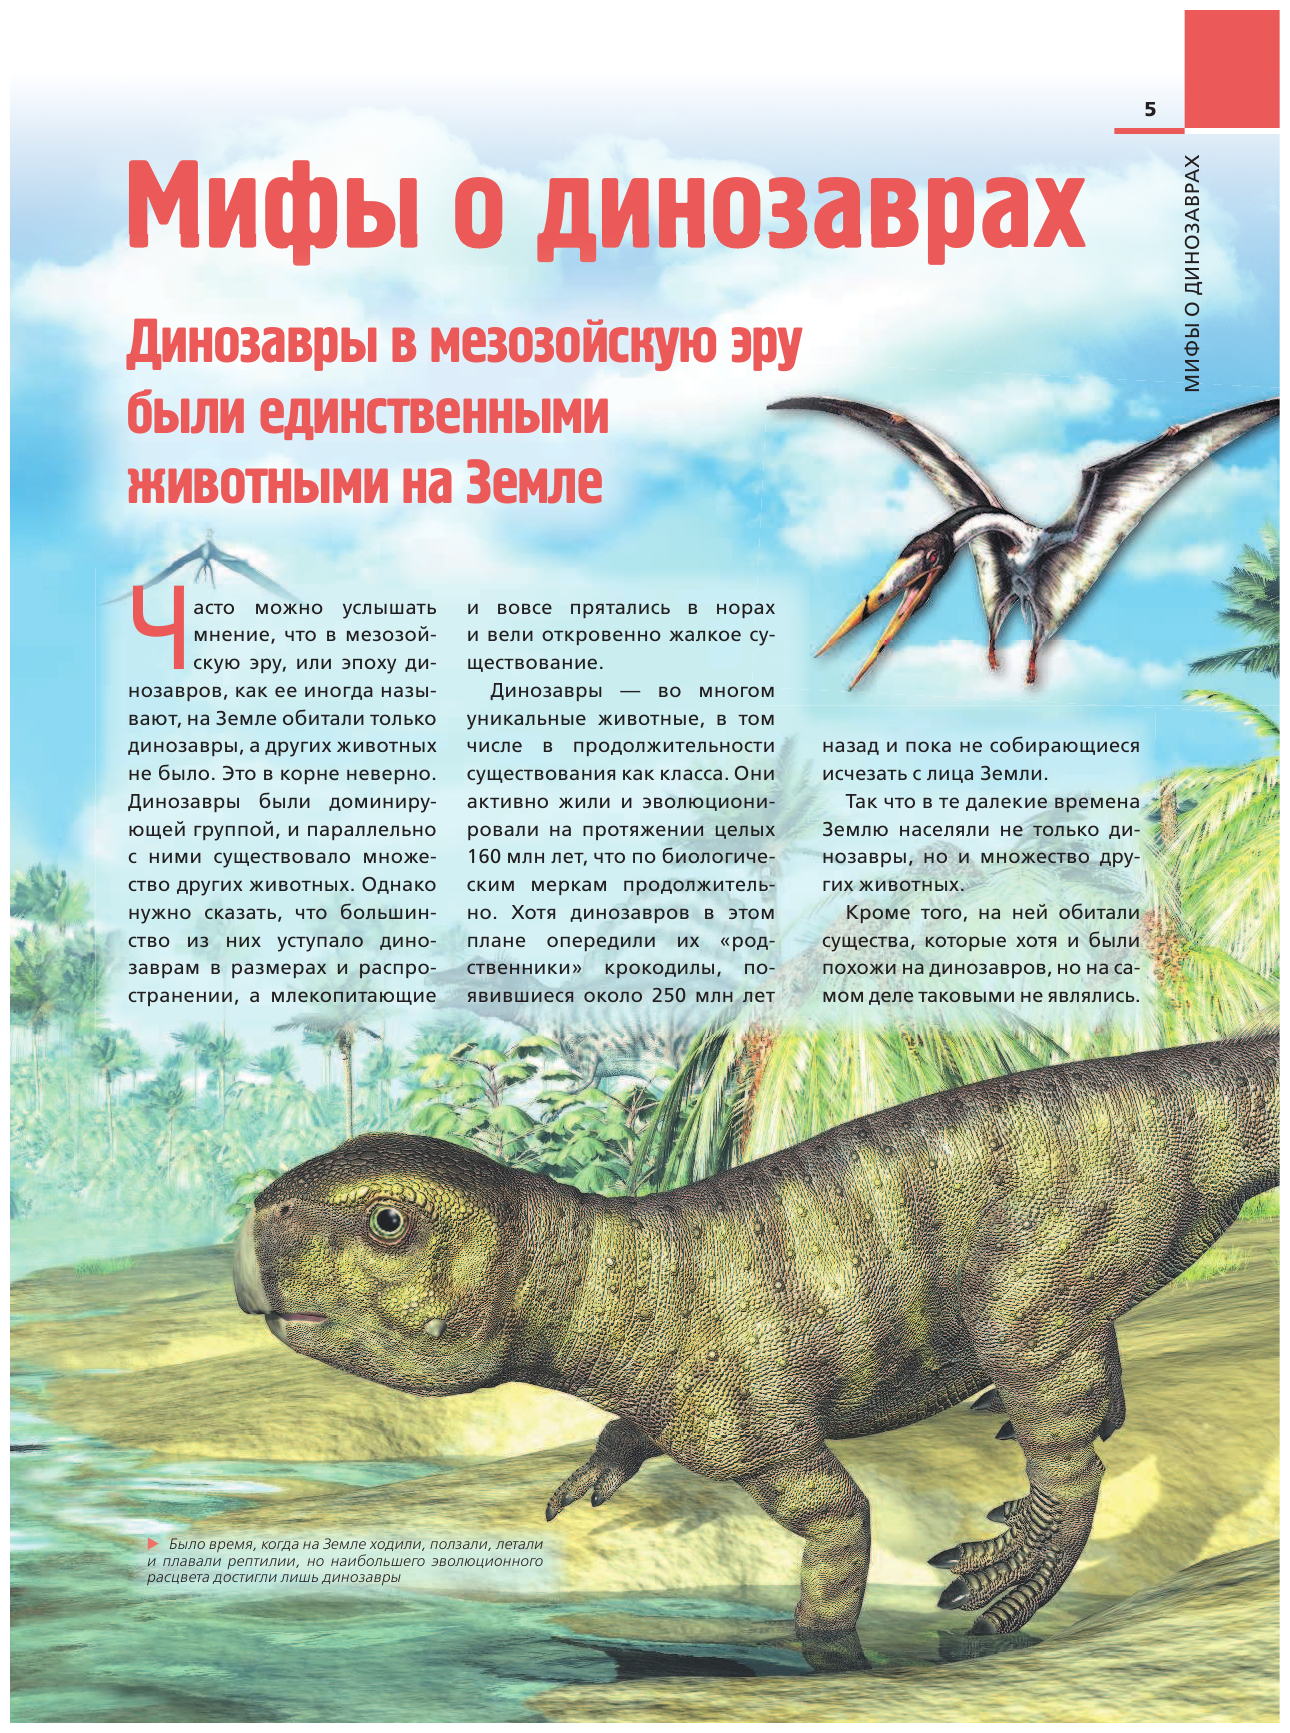 Динозавры: иллюстрированный путеводитель